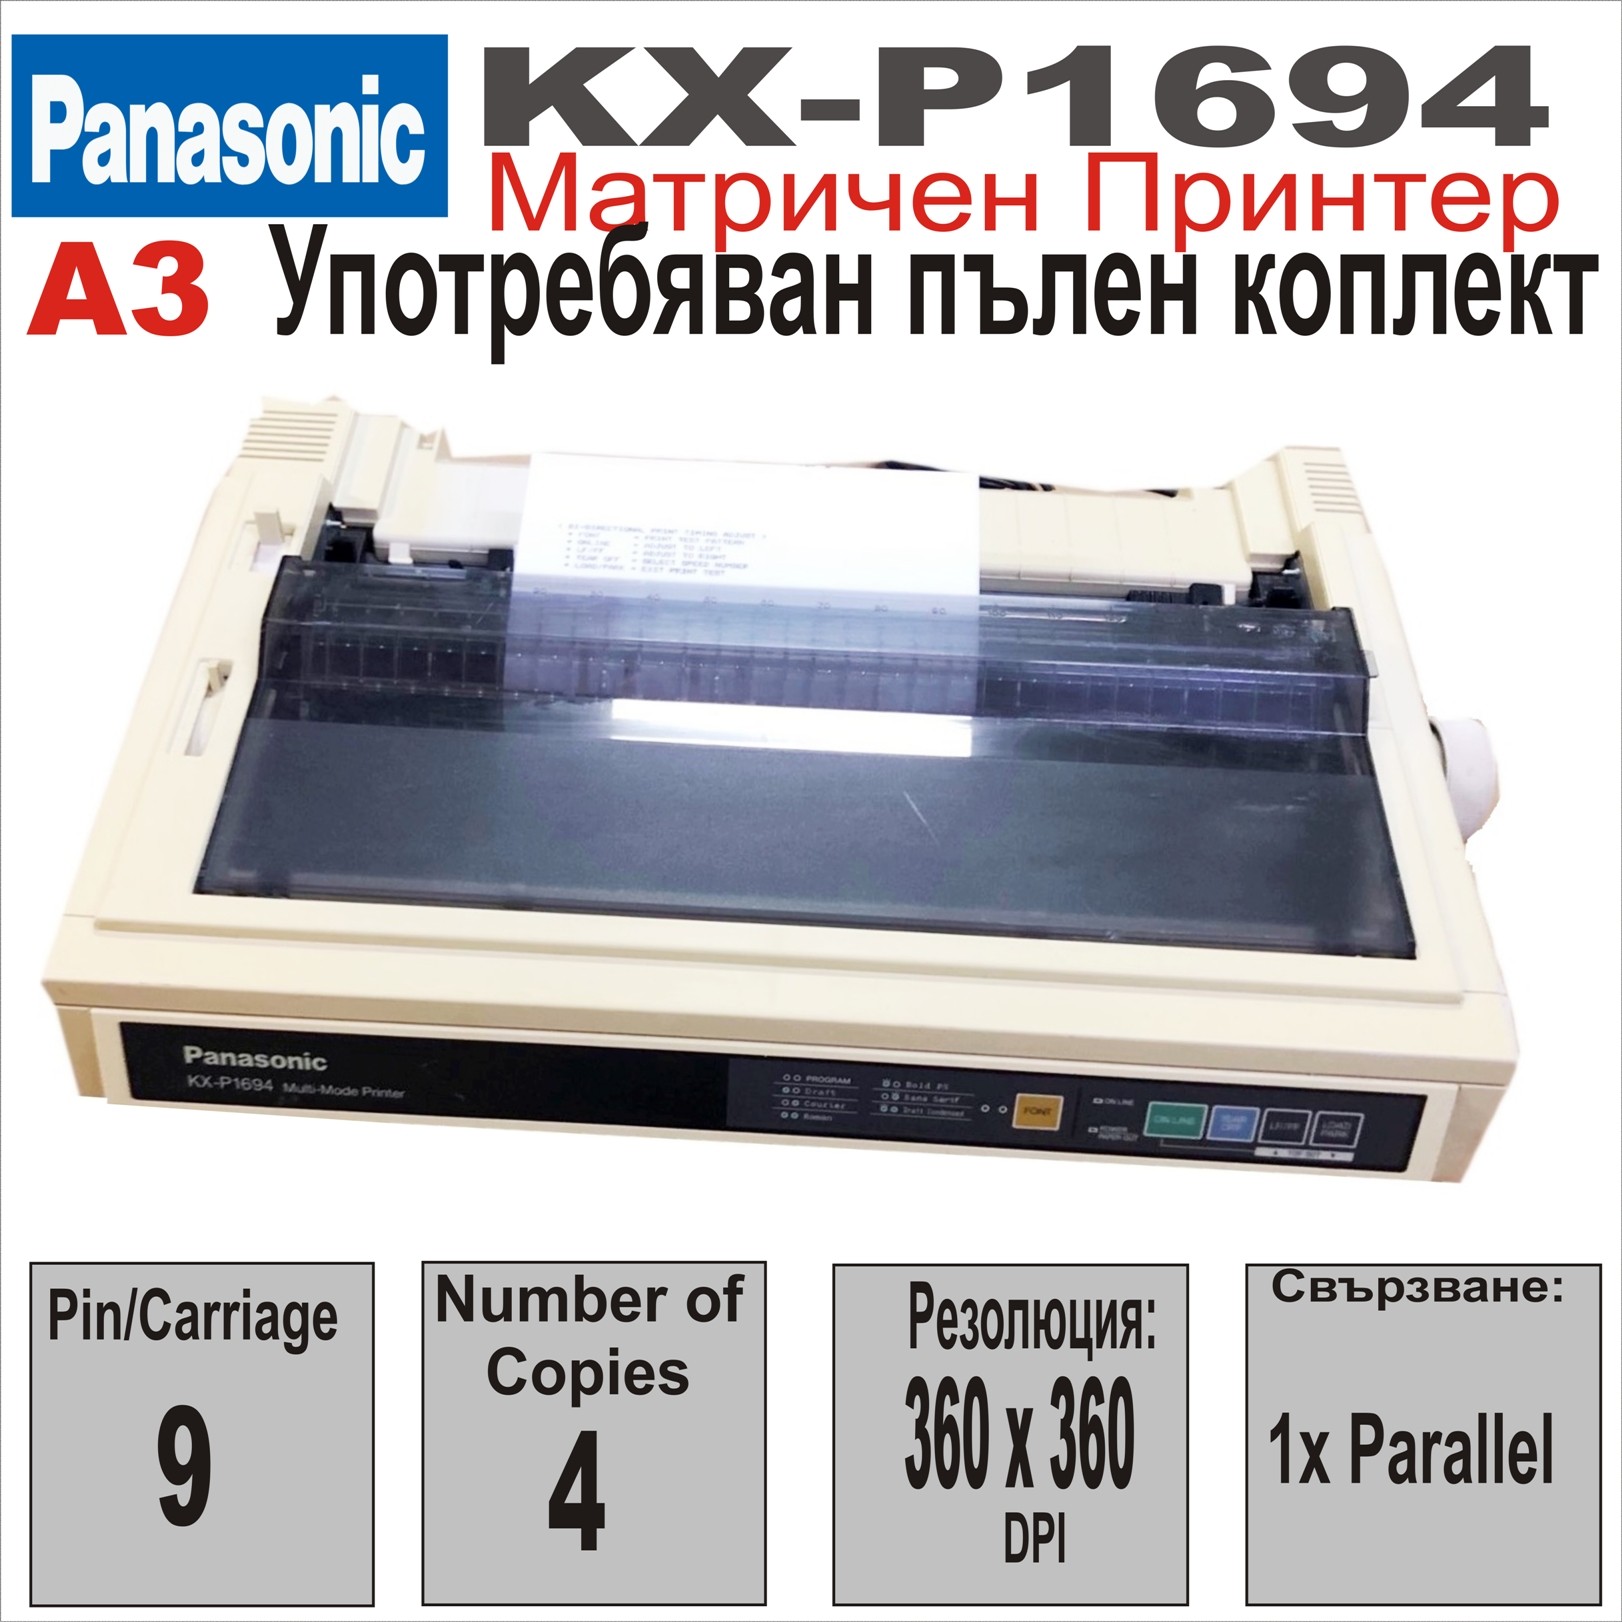 Матричен принтер Panasonic KX-P1694, 136col,9Pin